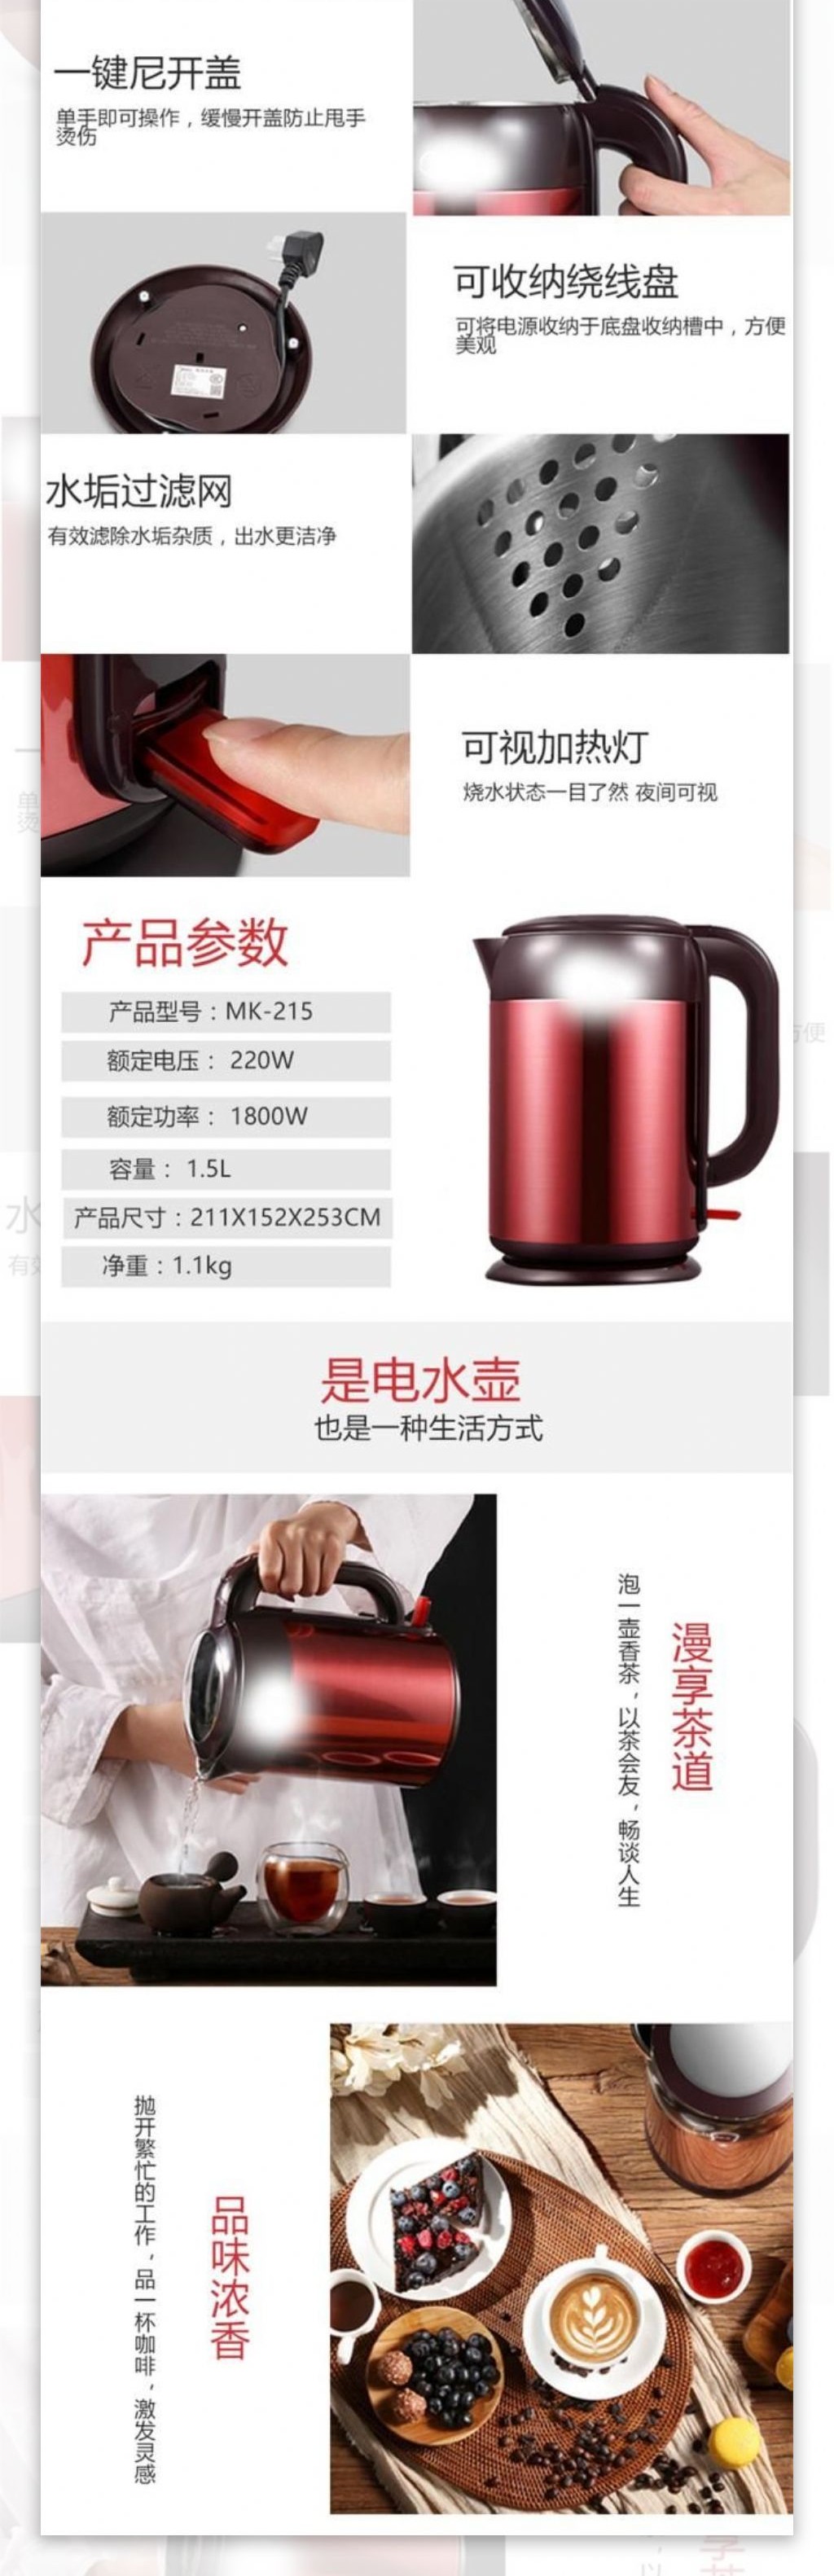 紫红色居家电器柠檬茶不锈钢电热水壶淘宝详情页